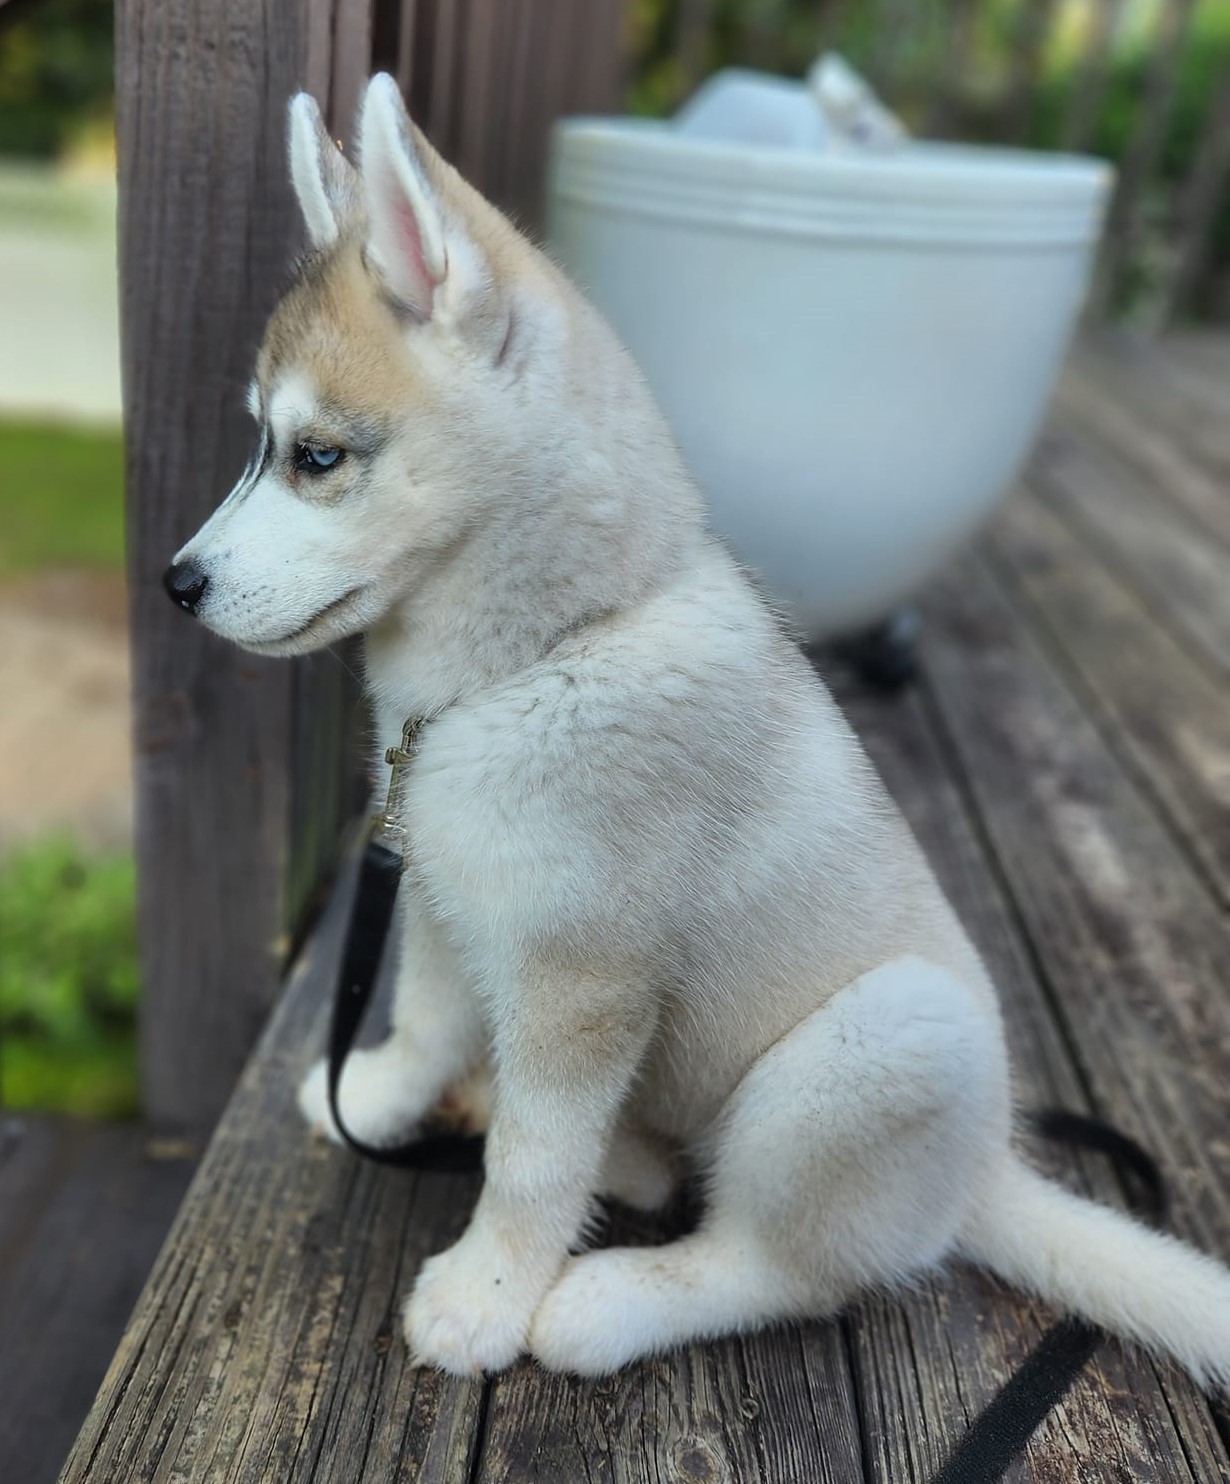 Kira at 10 weeks